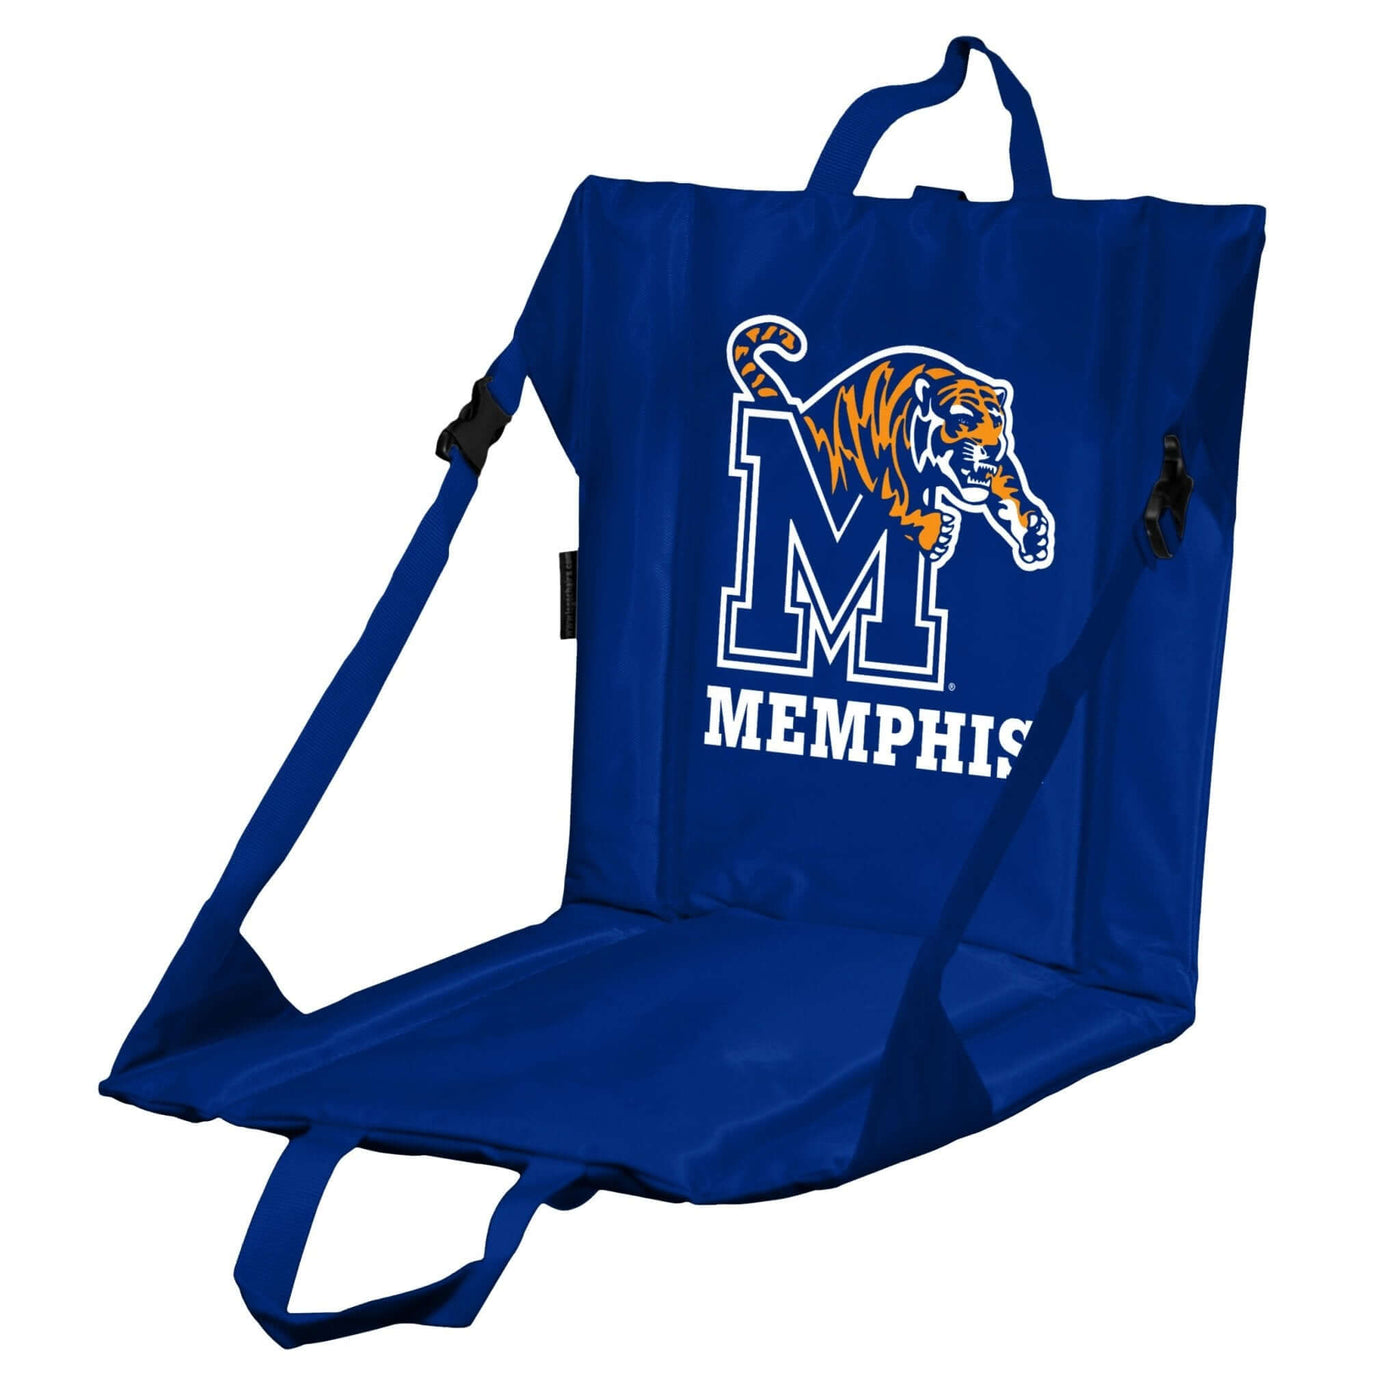 Memphis Stadium Seat - Logo Brands